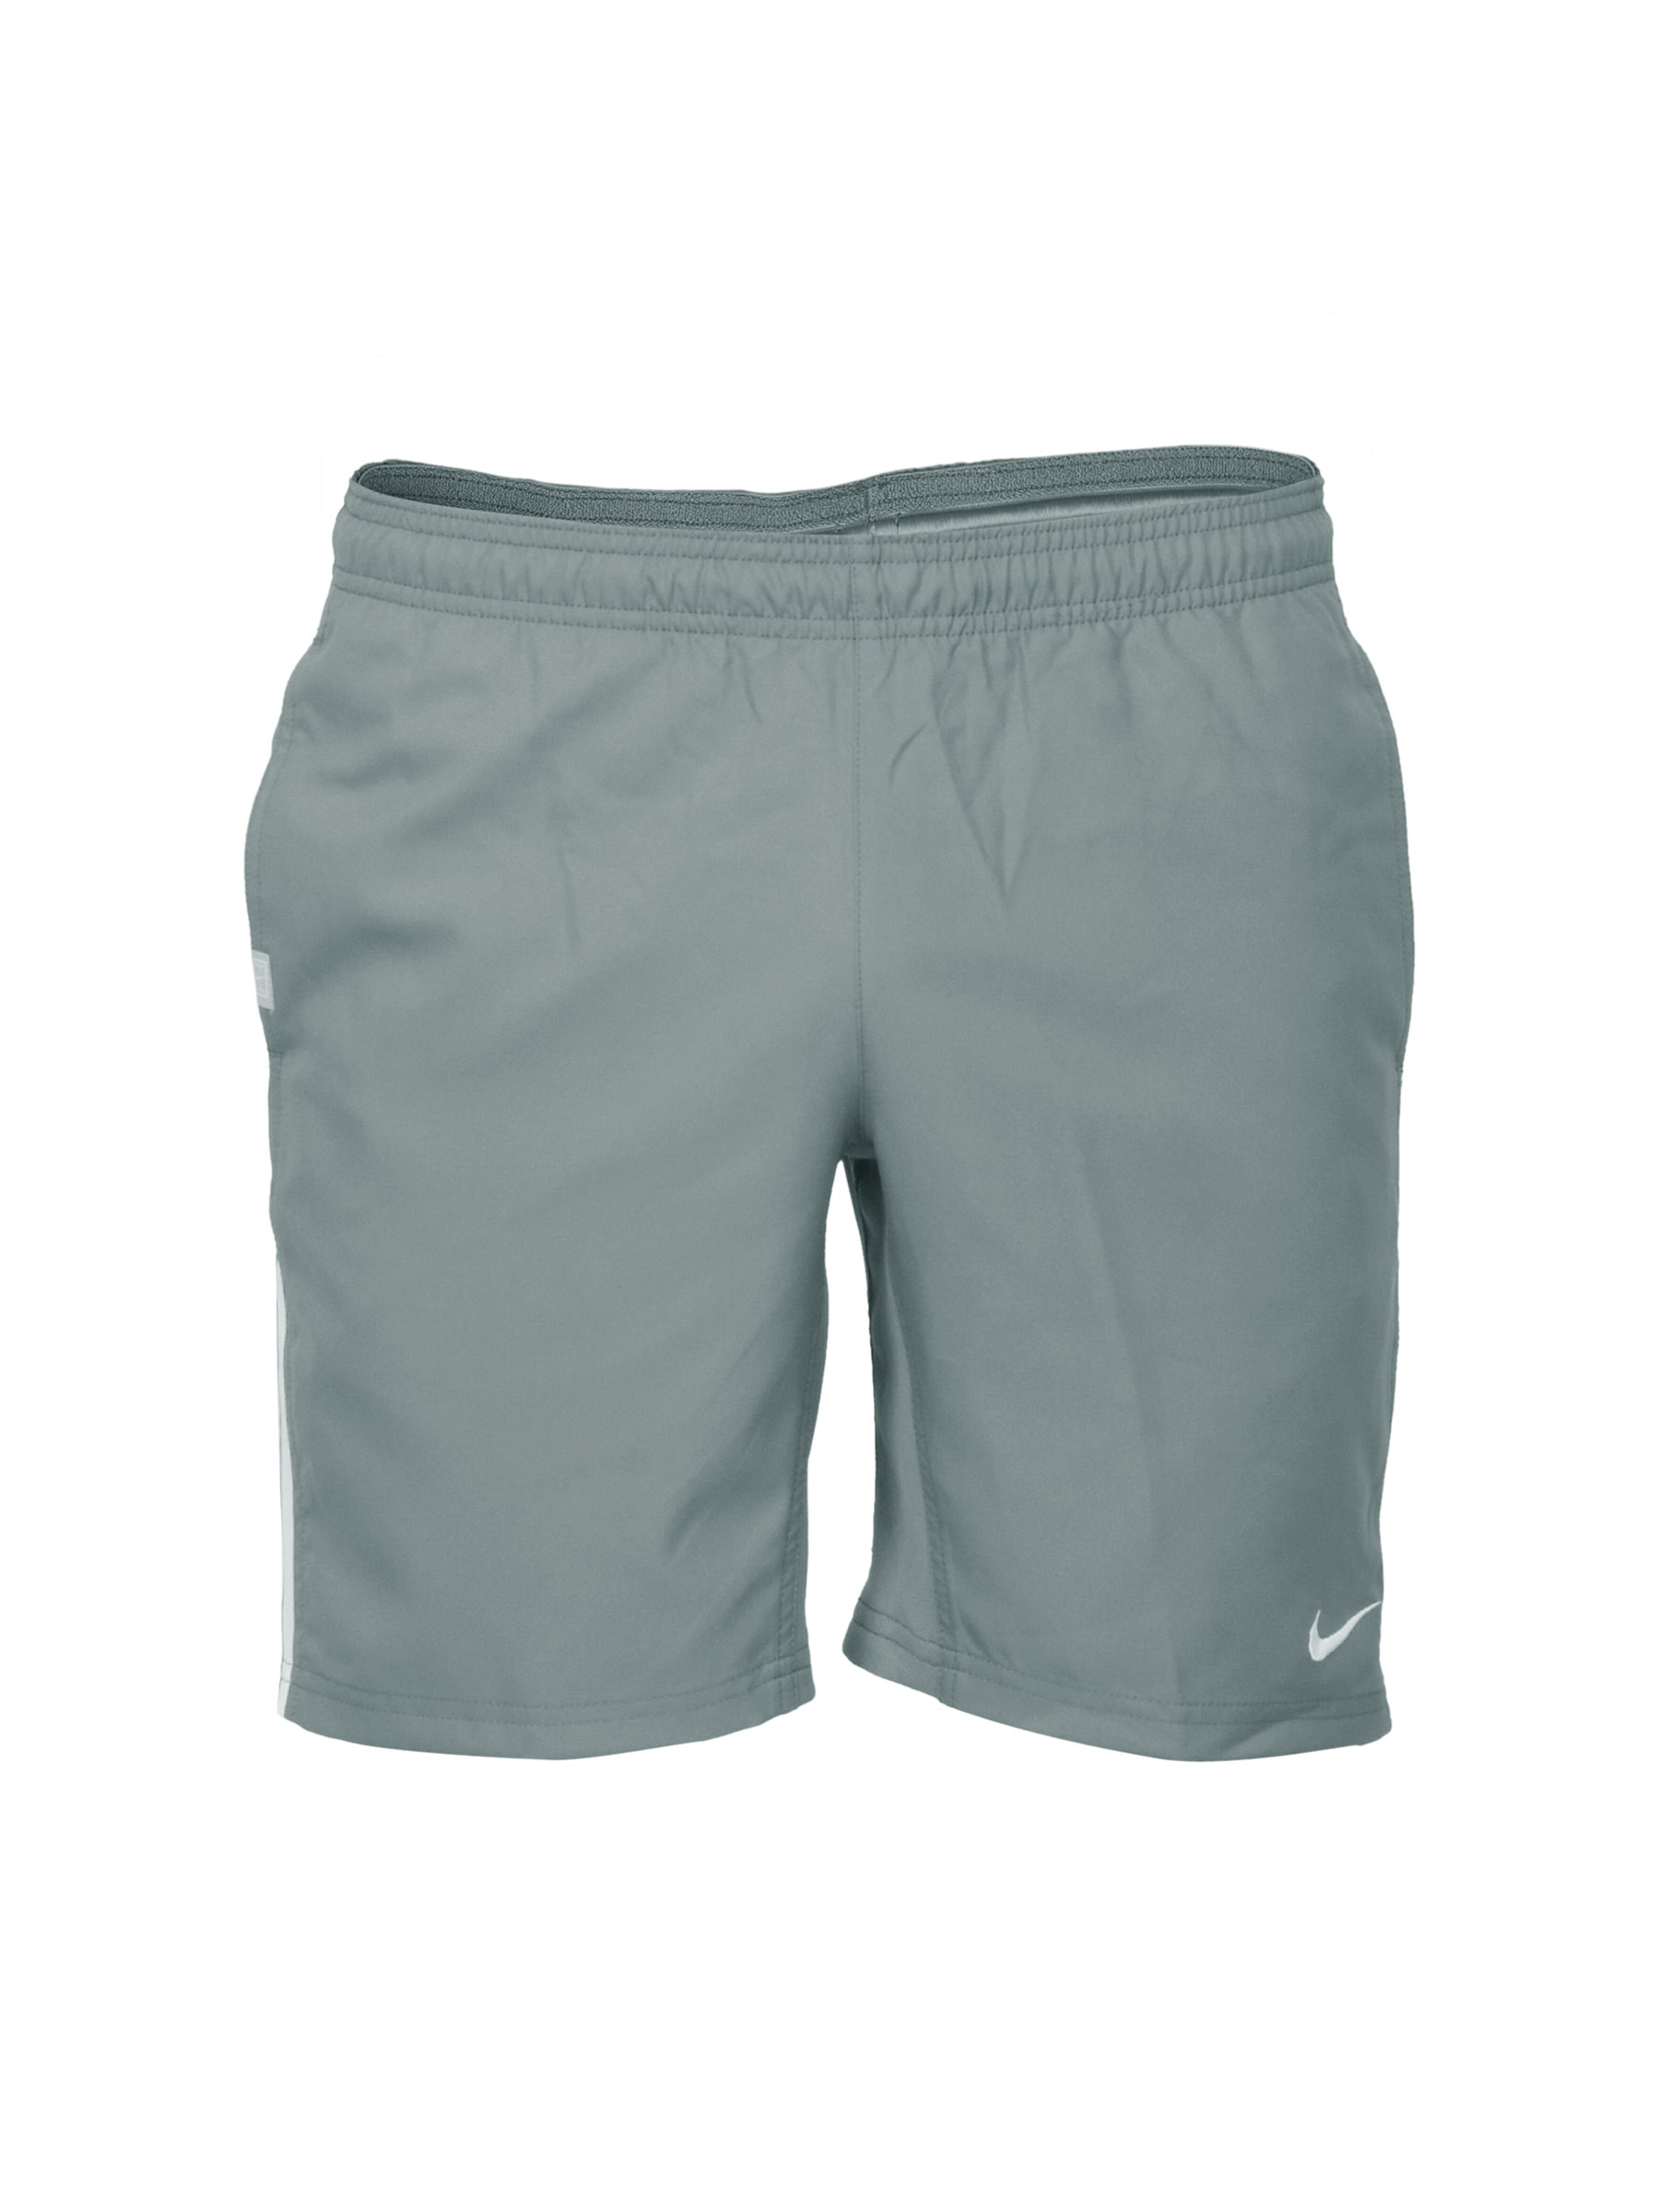 Nike Men Woven Grey Shorts